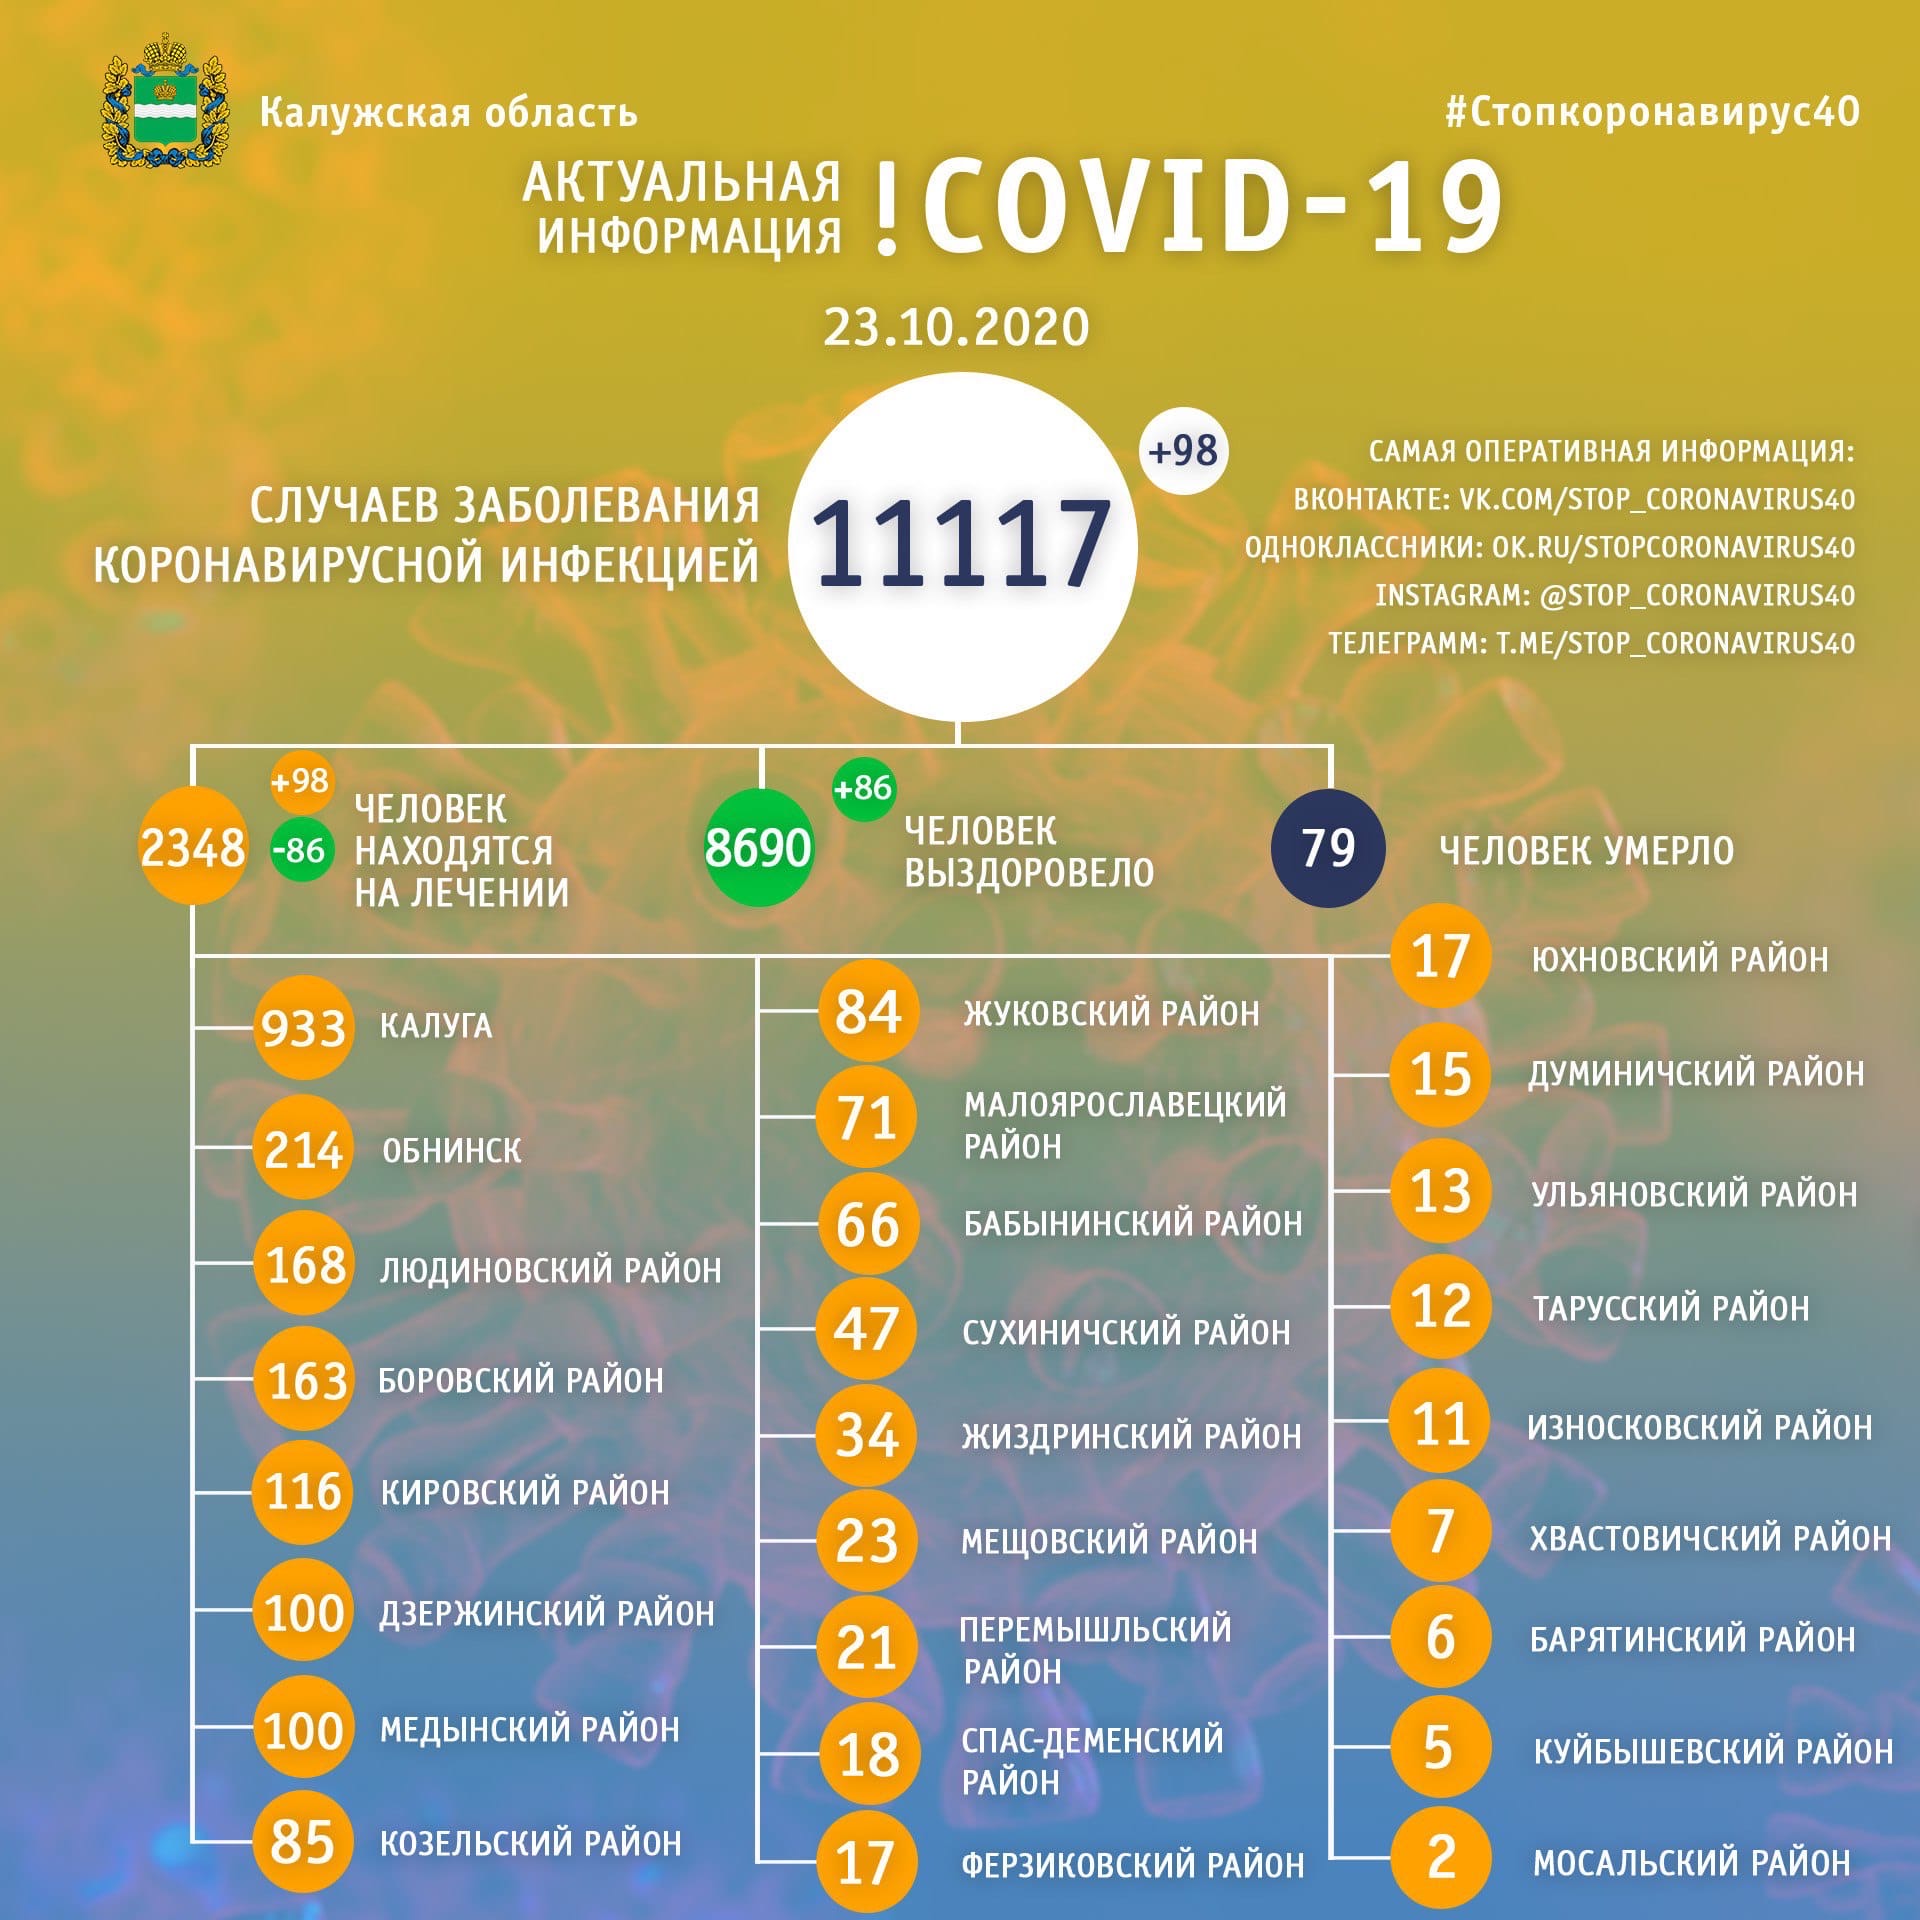 Официальная статистика по коронавирусу в Калужской области на 23 октября 2020 года.